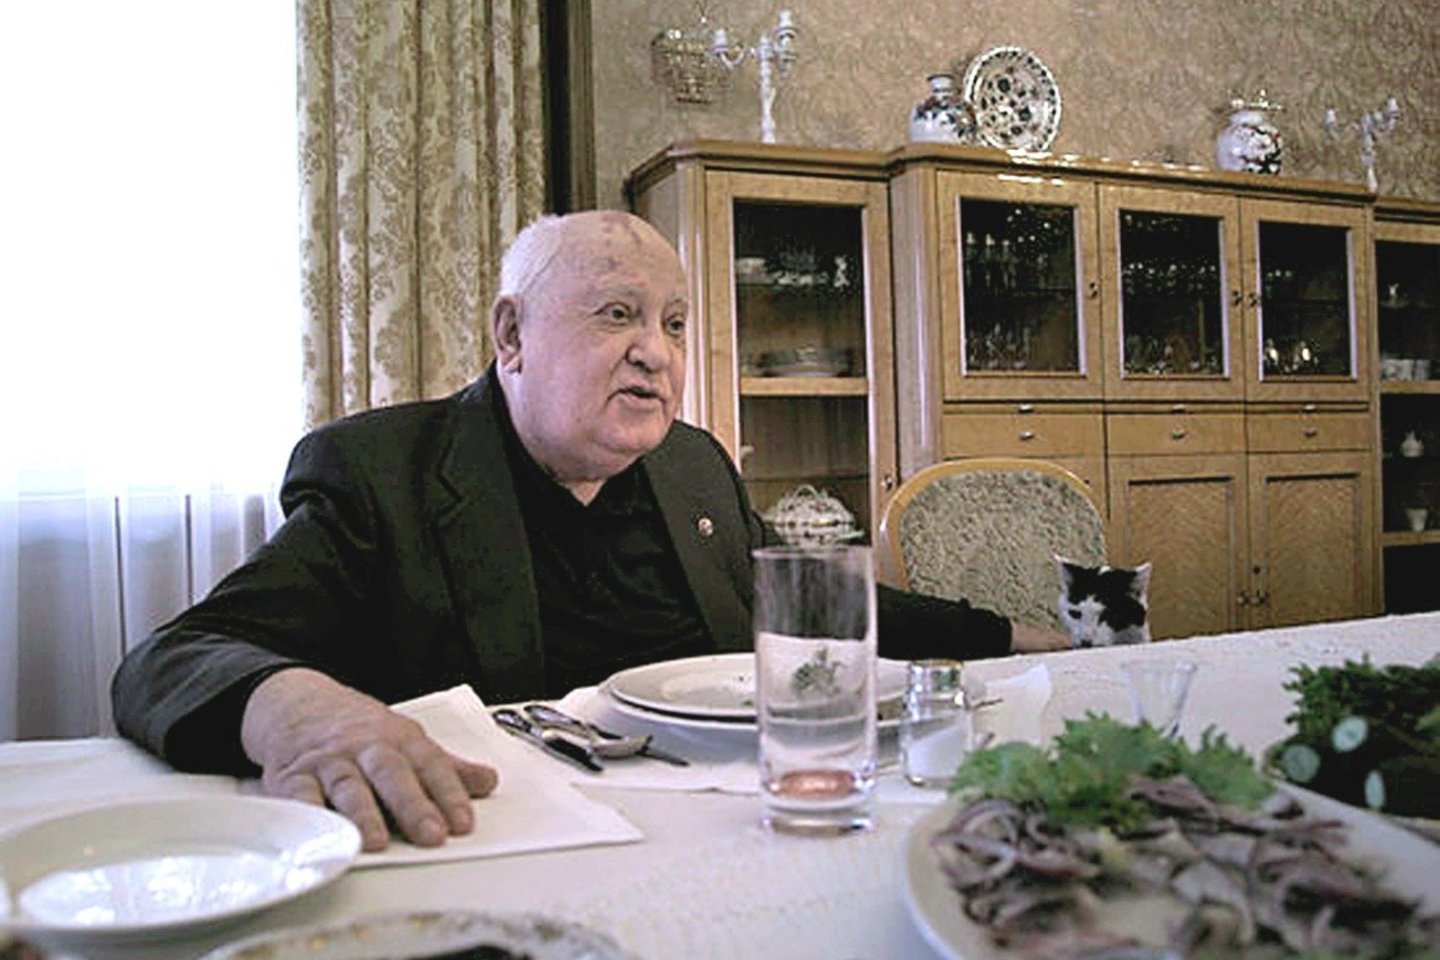 M.Gorbačiovas: „Kai kas sako, kad reikėjo juos šaudyti. Bet jeigu taip pasakyti – šaudyti ir vienu atveju, ir kitu šaudyti. Ne. Tai ne būdas. Todėl aš manau, kad pasielgiau teisingai“.<br>Stopkadras iš filmo „Gorbačiovas. Rojus“